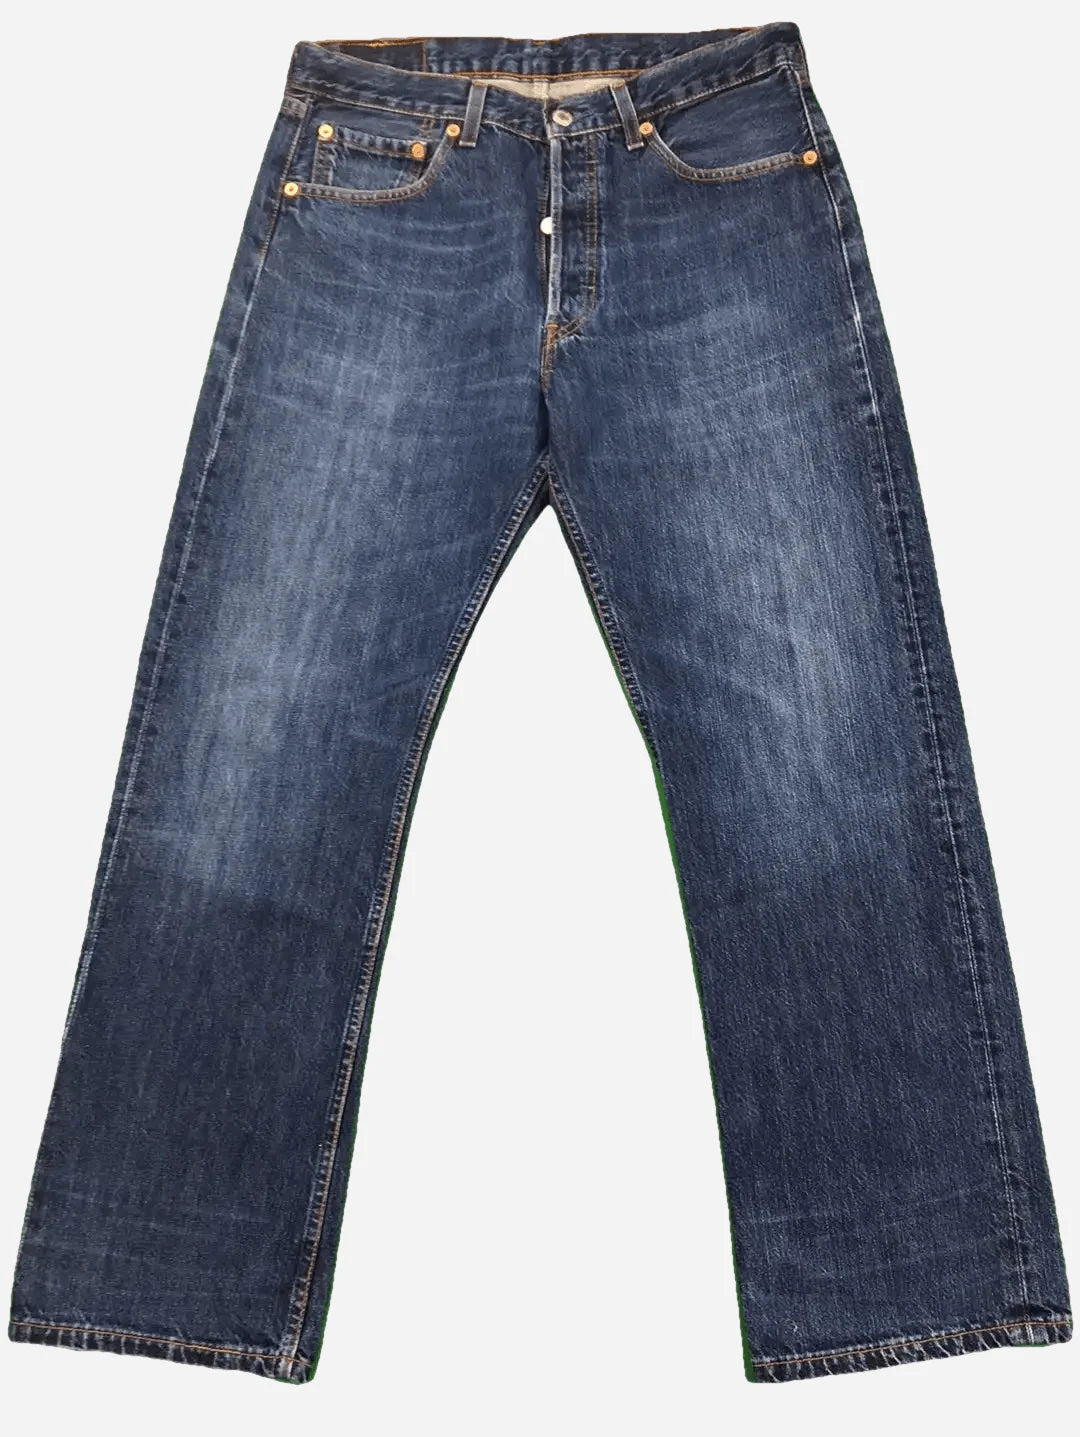 Levi’s 501 Jeans 32/30 (M)